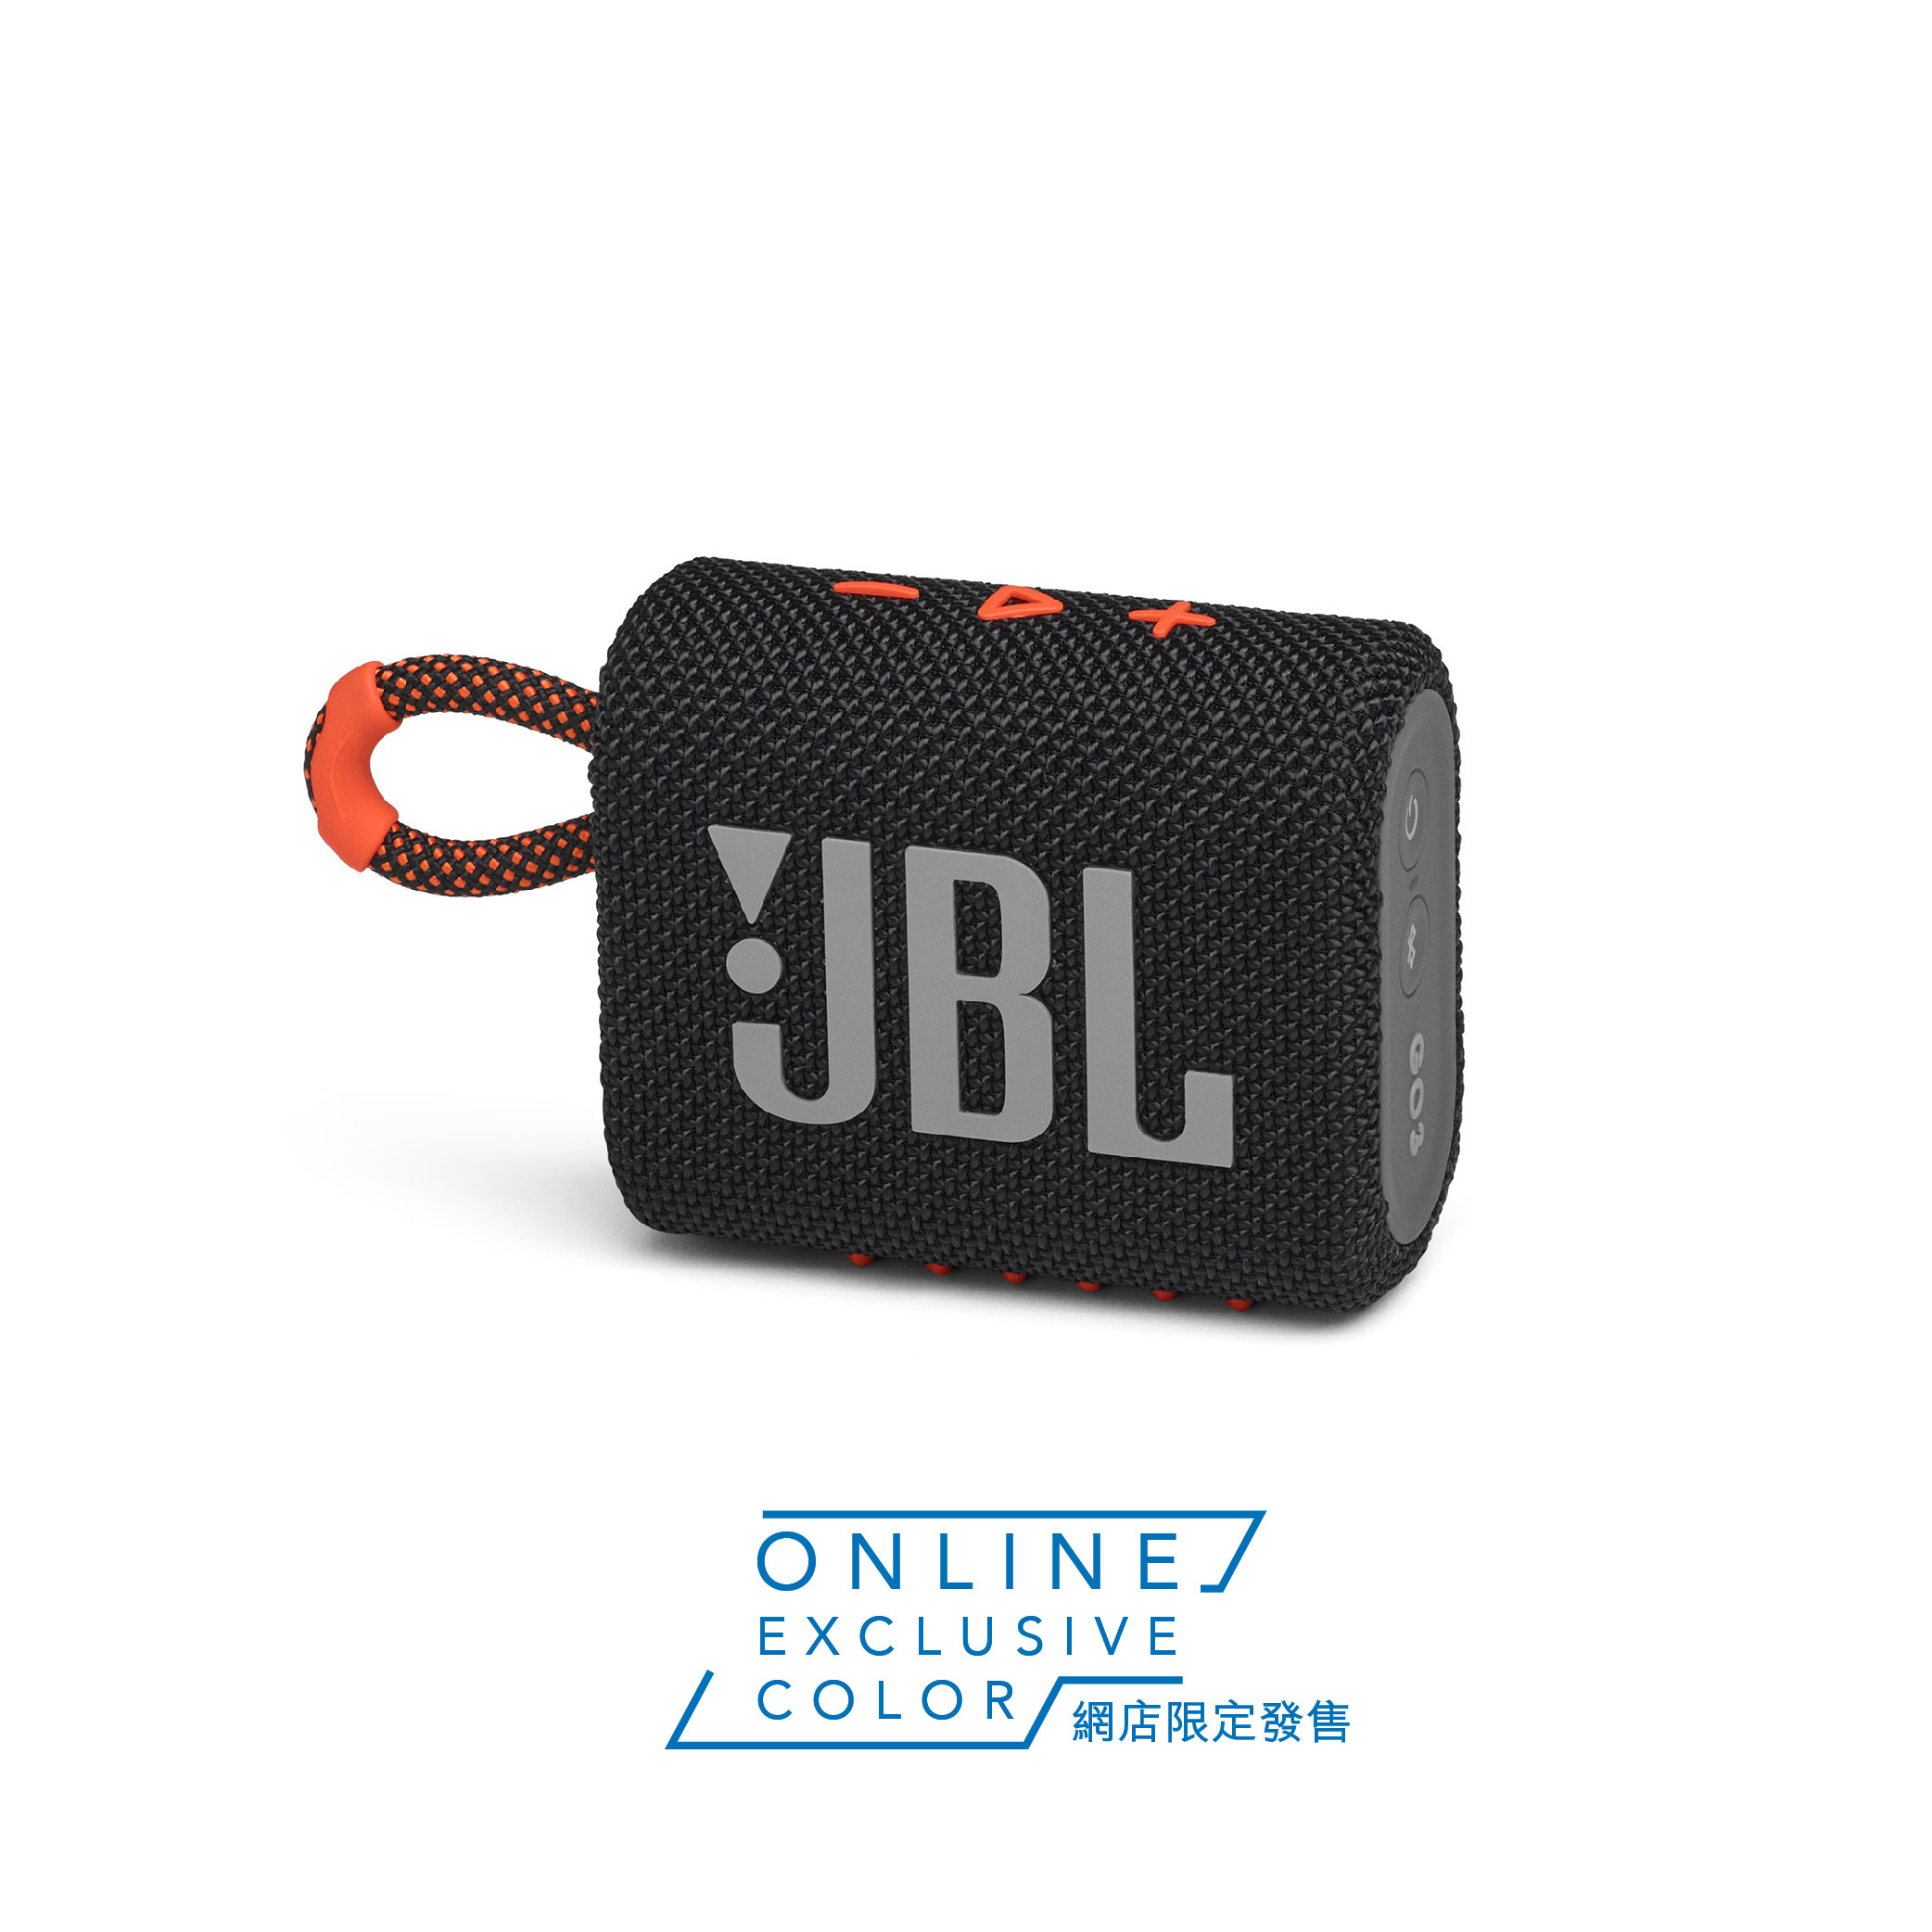 JBL GO3 迷你防水藍牙喇叭 - 黑橙色 [港澳地區網上獨家配色]